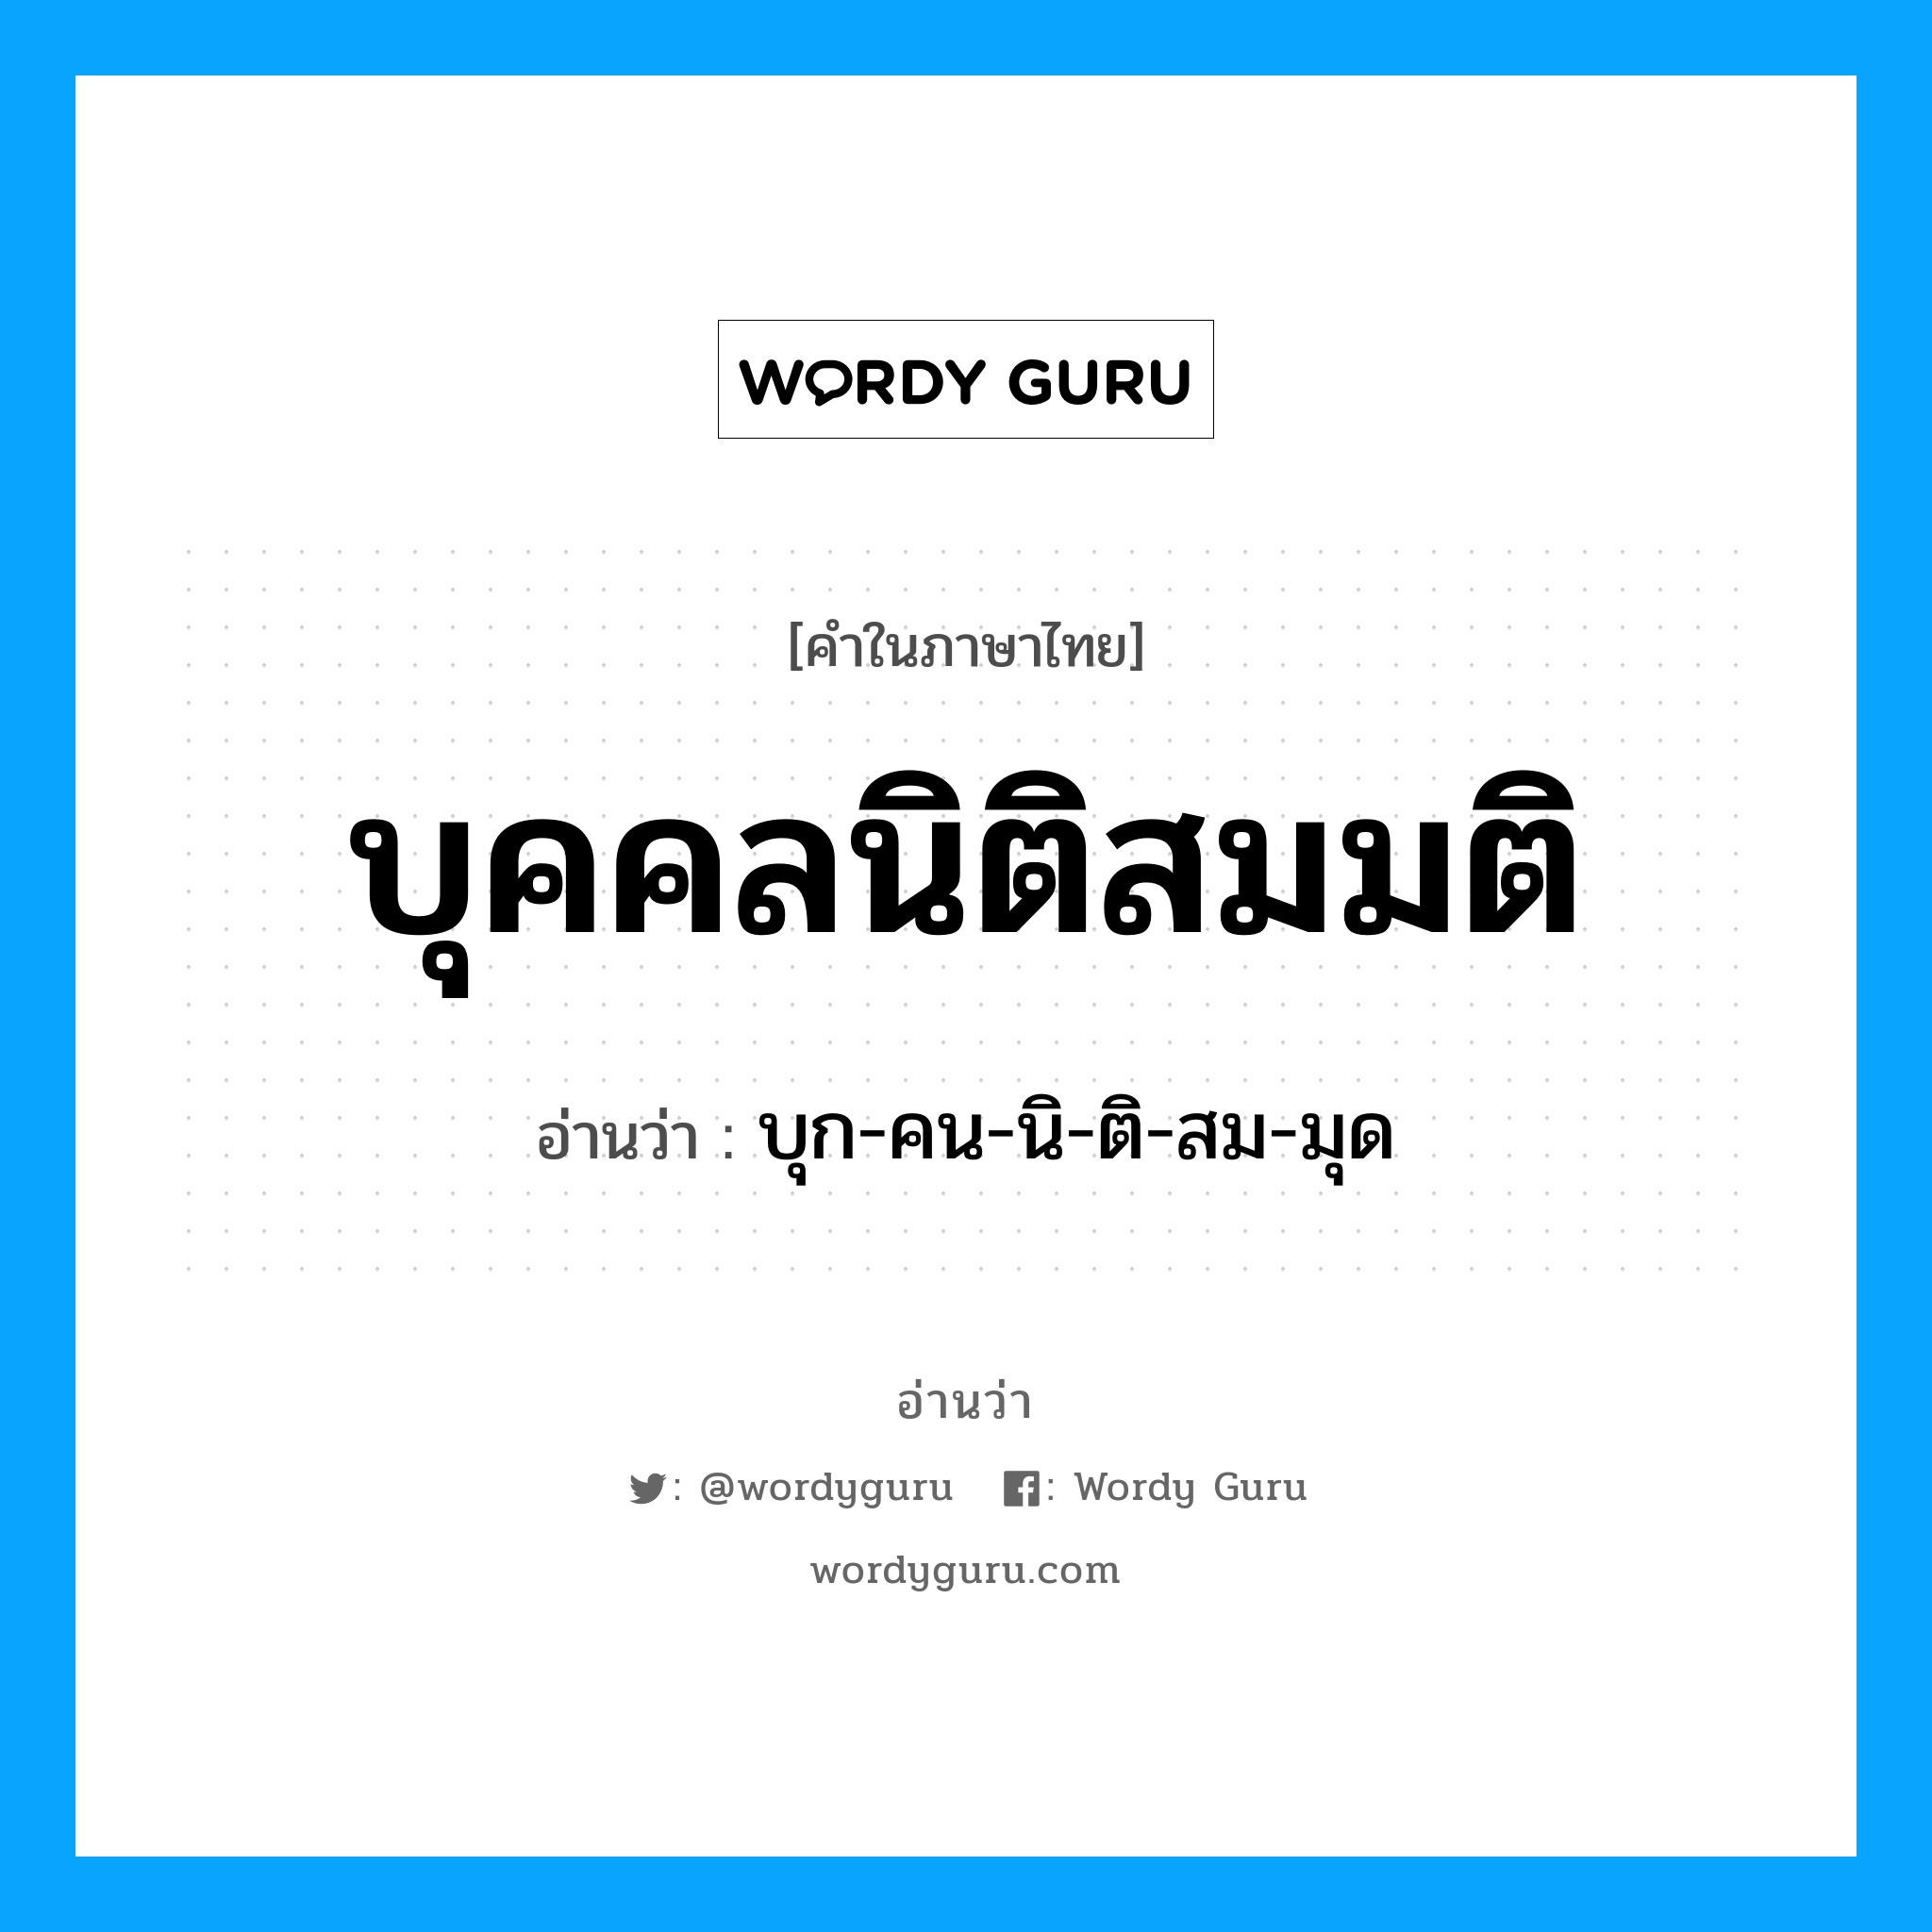 บุก-คน-นิ-ติ-สม-มุด เป็นคำอ่านของคำไหน?, คำในภาษาไทย บุก-คน-นิ-ติ-สม-มุด อ่านว่า บุคคลนิติสมมติ